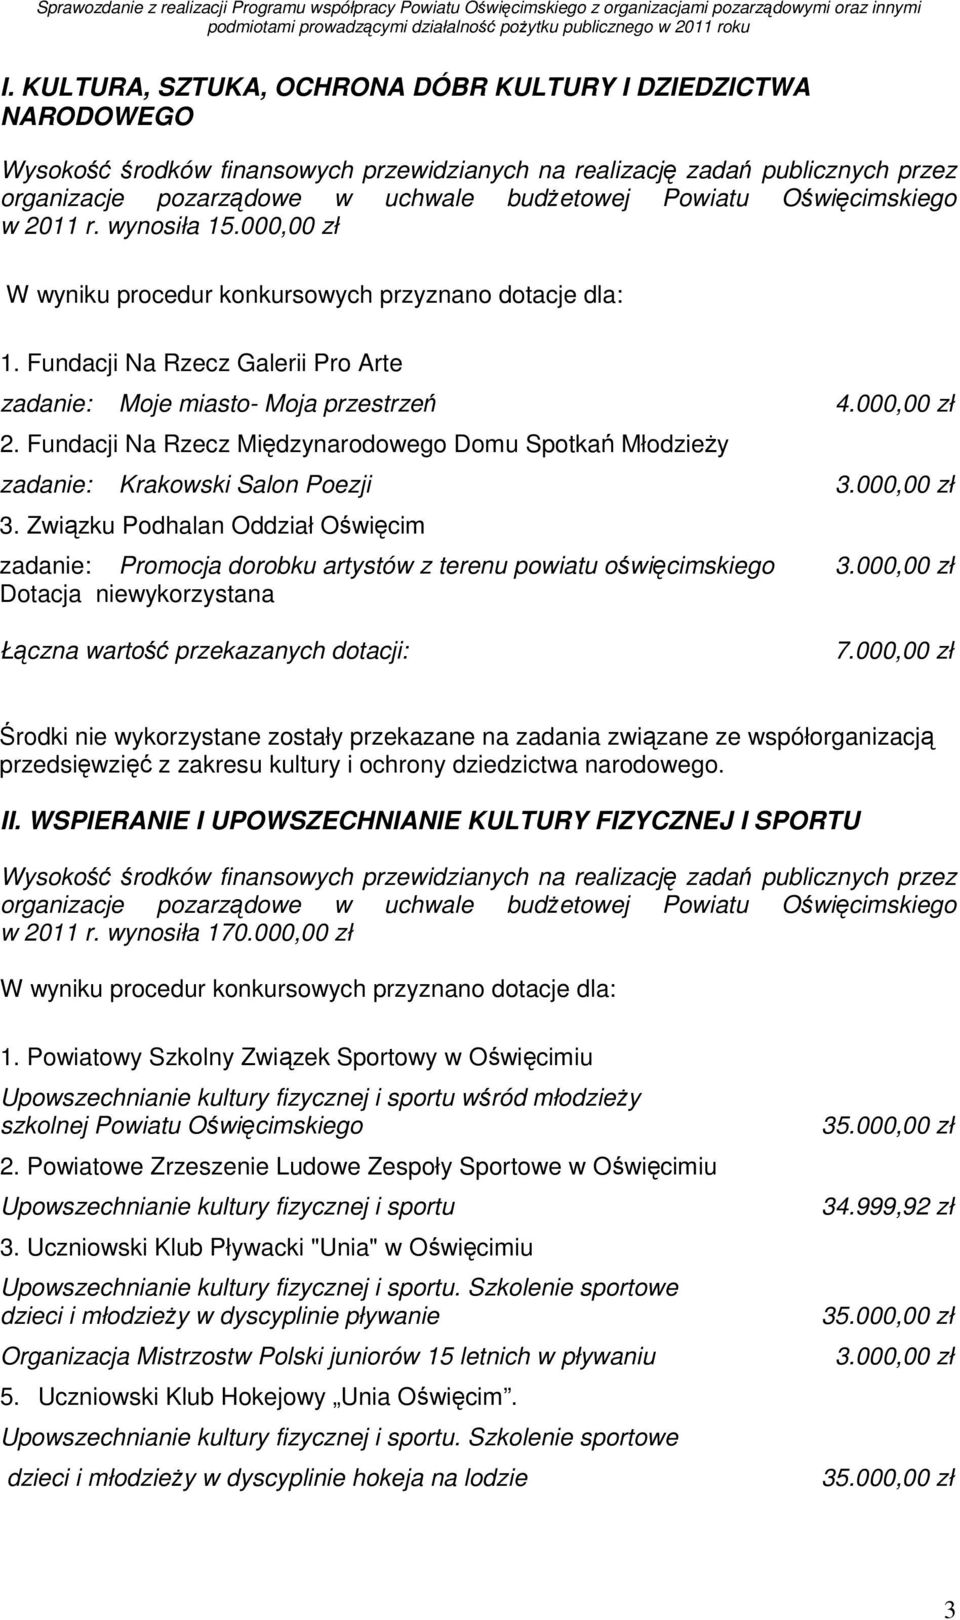 Fundacji Na Rzecz Międzynarodowego Domu Spotkań MłodzieŜy zadanie: Krakowski Salon Poezji 3.000,00 zł 3.